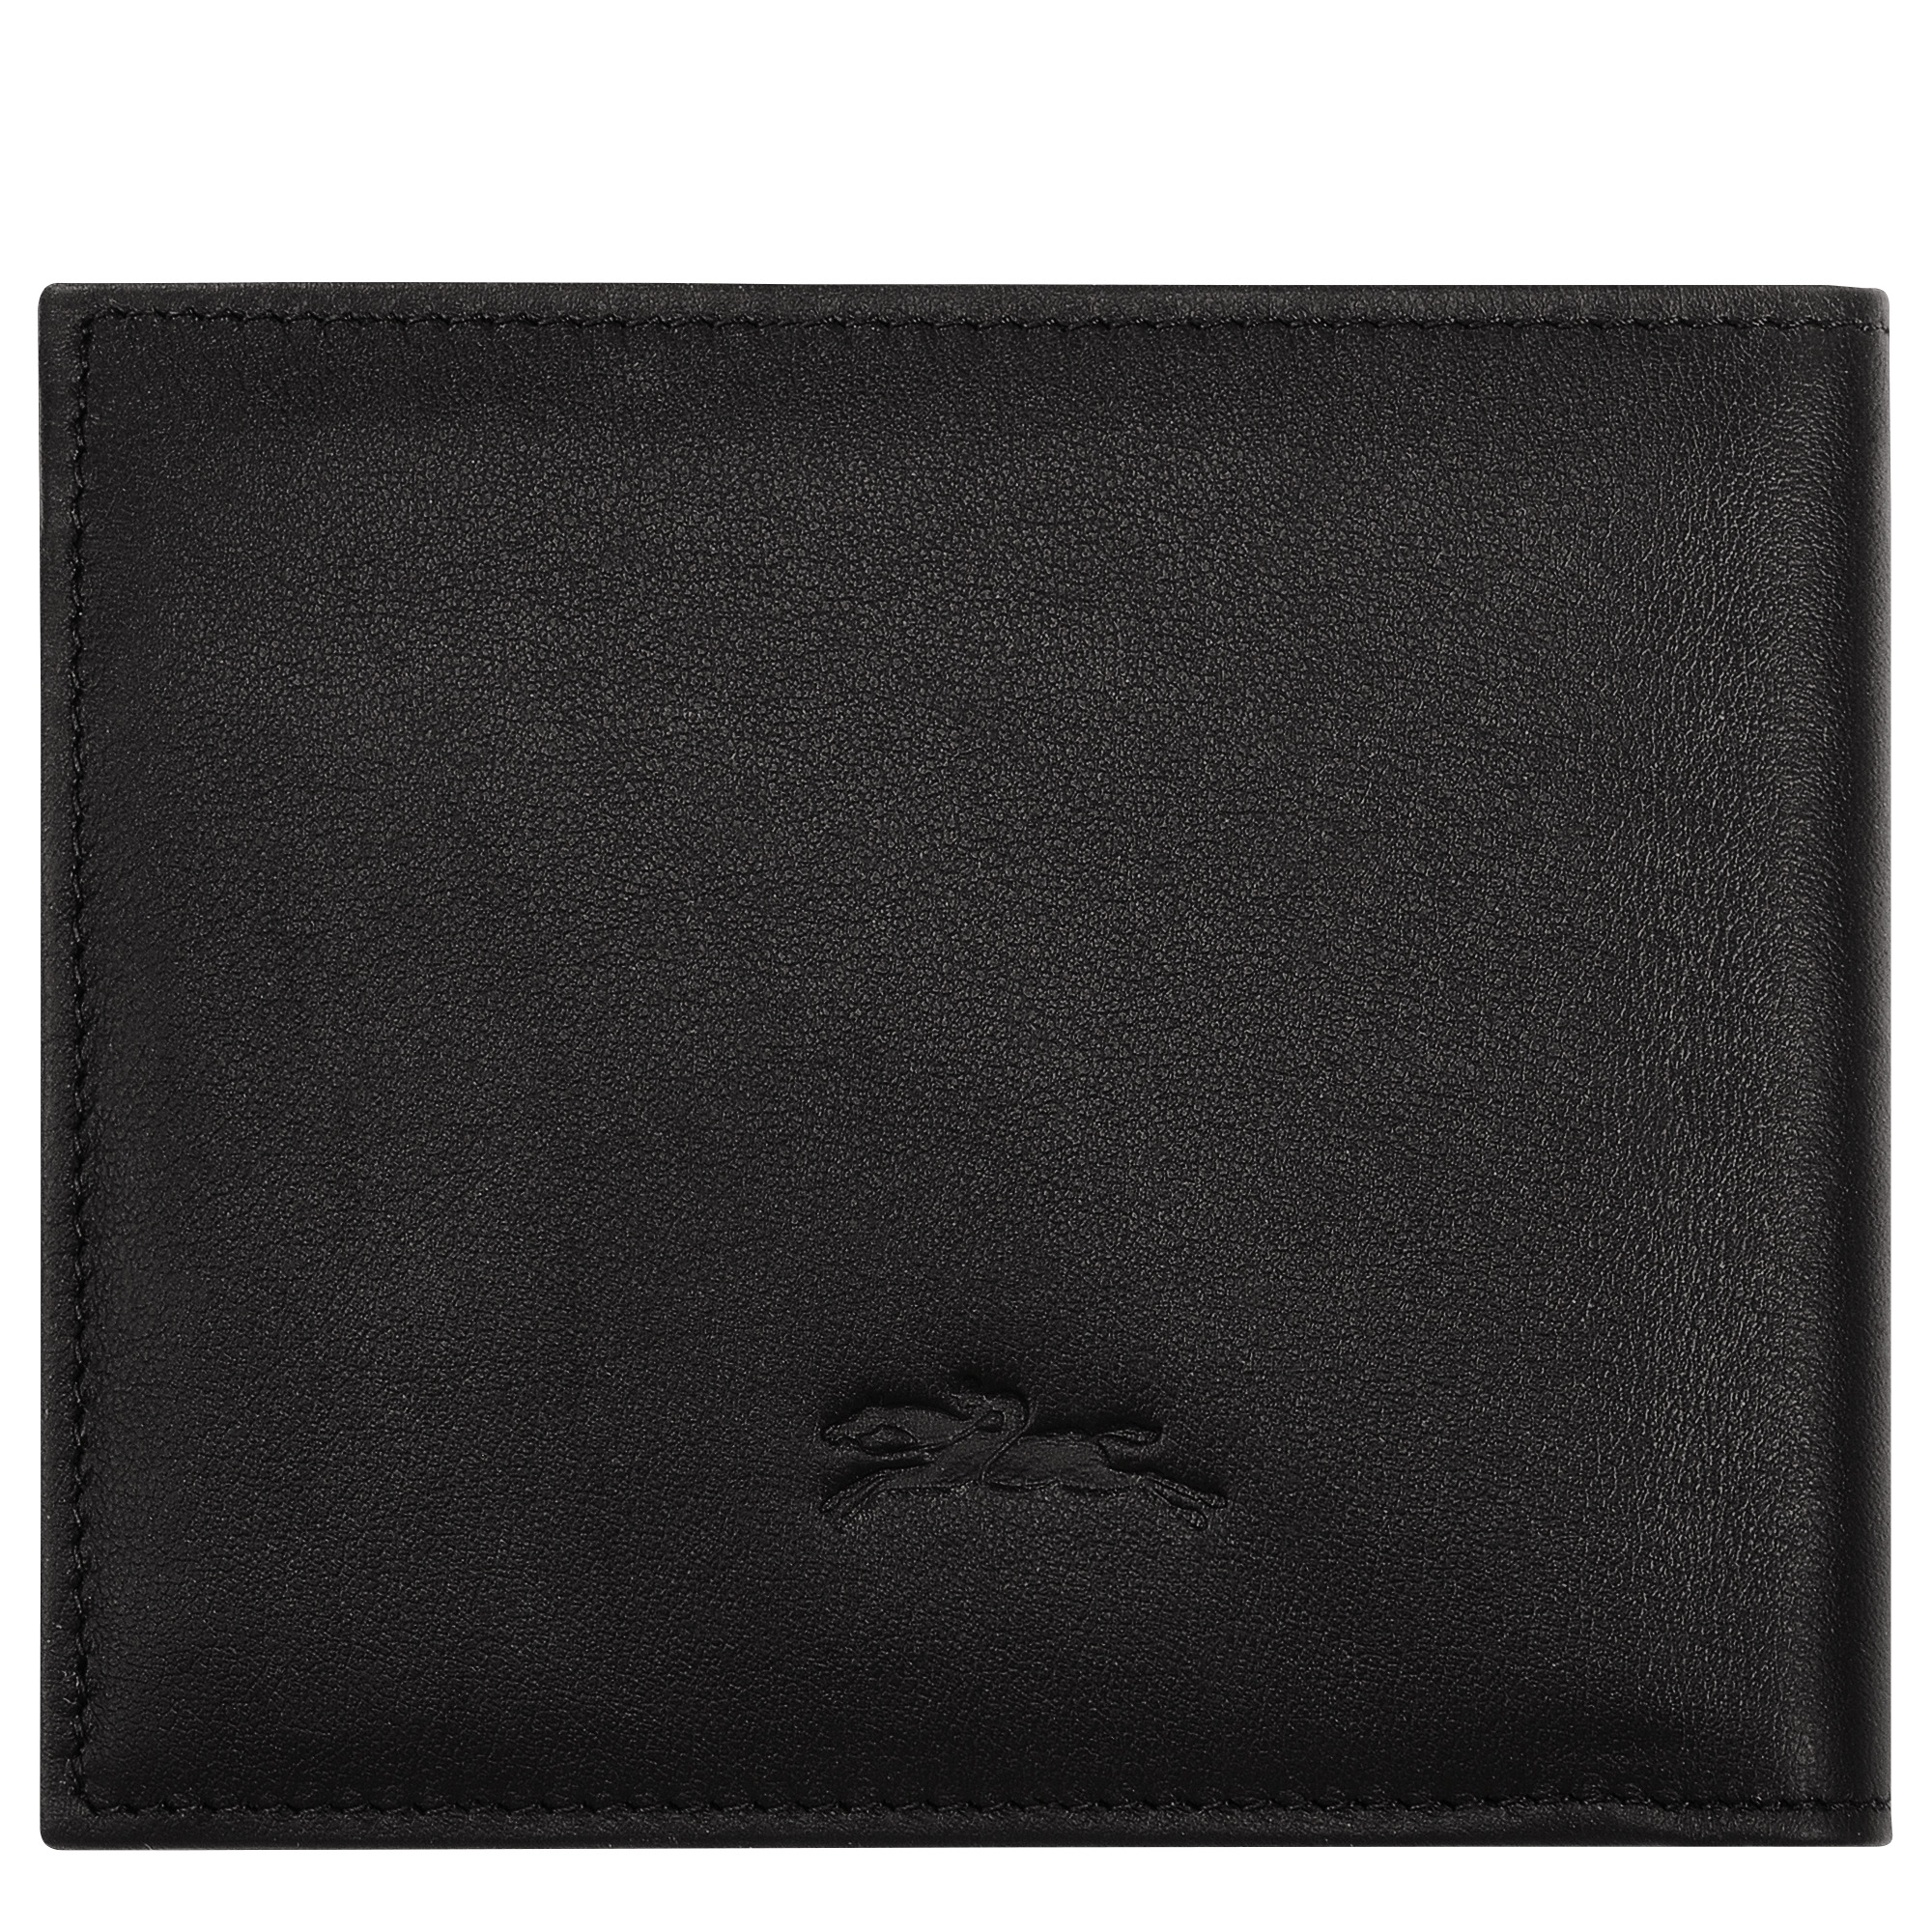 Longchamp sur Seine Wallet Black - Leather - 2